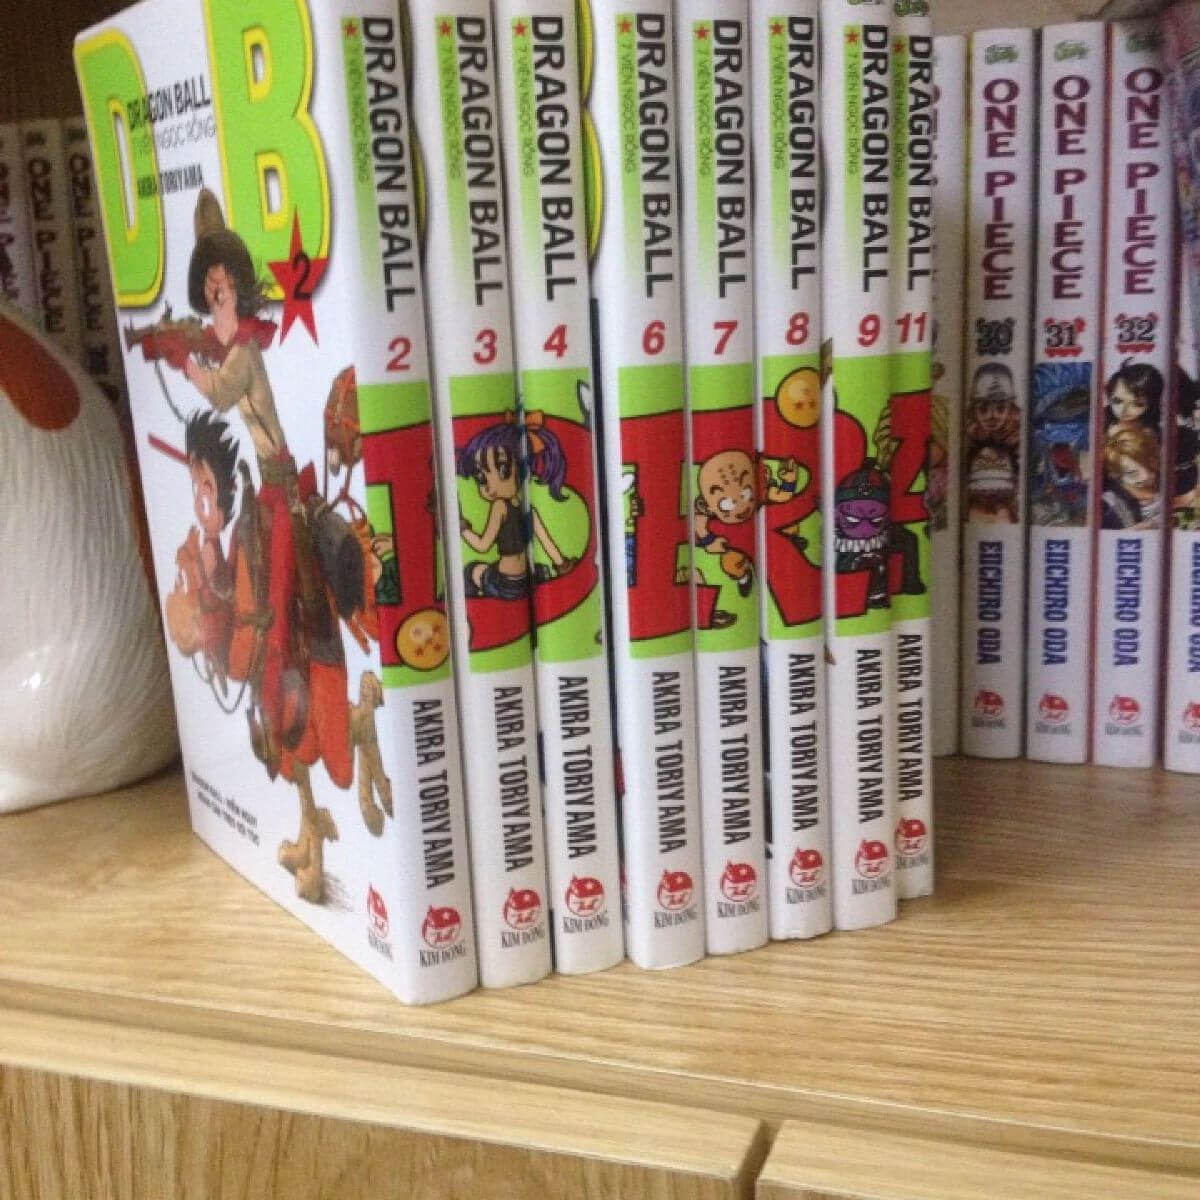 Manga Dragon Ball (tiếng Việt: 7 viên ngọc rồng)